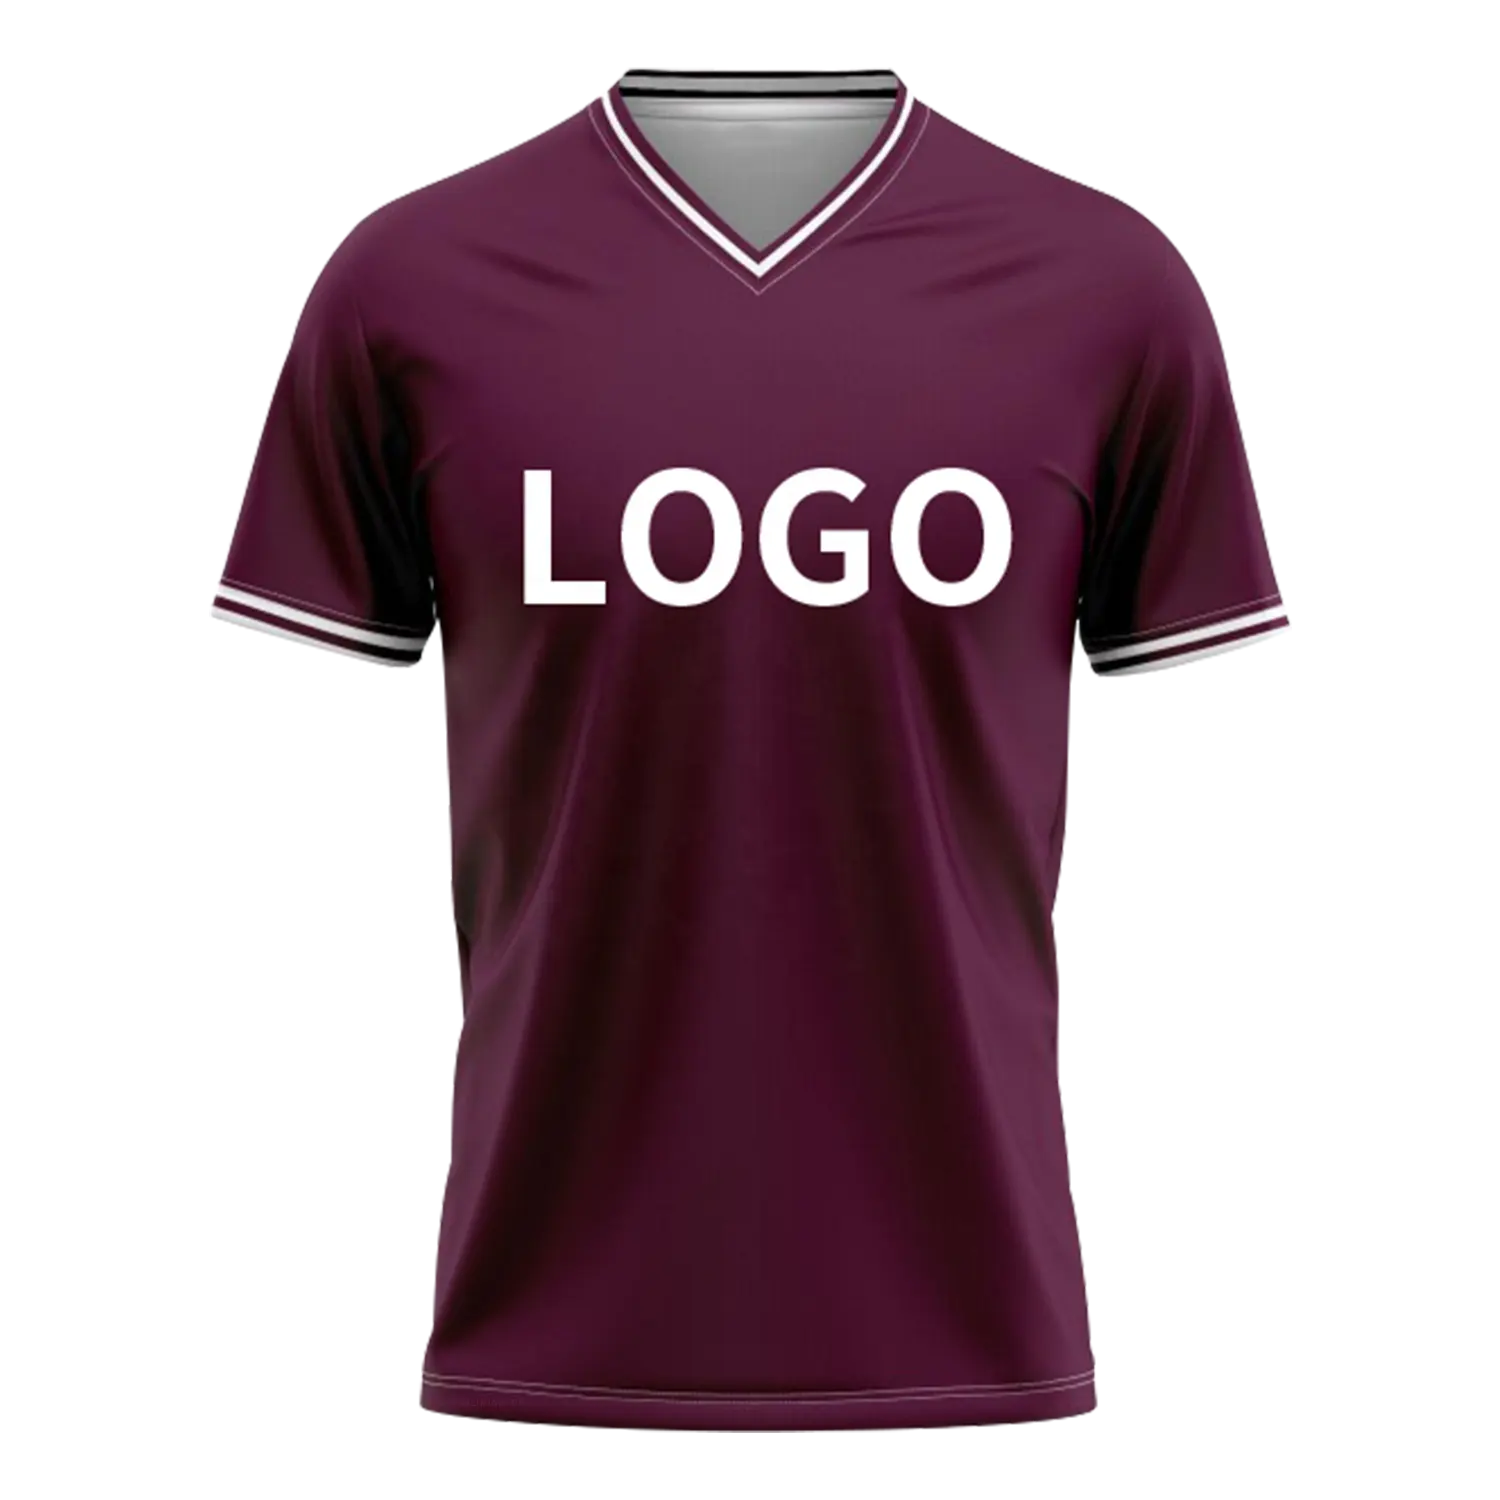 OEM özel yüksek kaliteli futbol forması gömlek spor futbol forması takım erkekler için V boyun eğitim futbol gömlek VLDX02